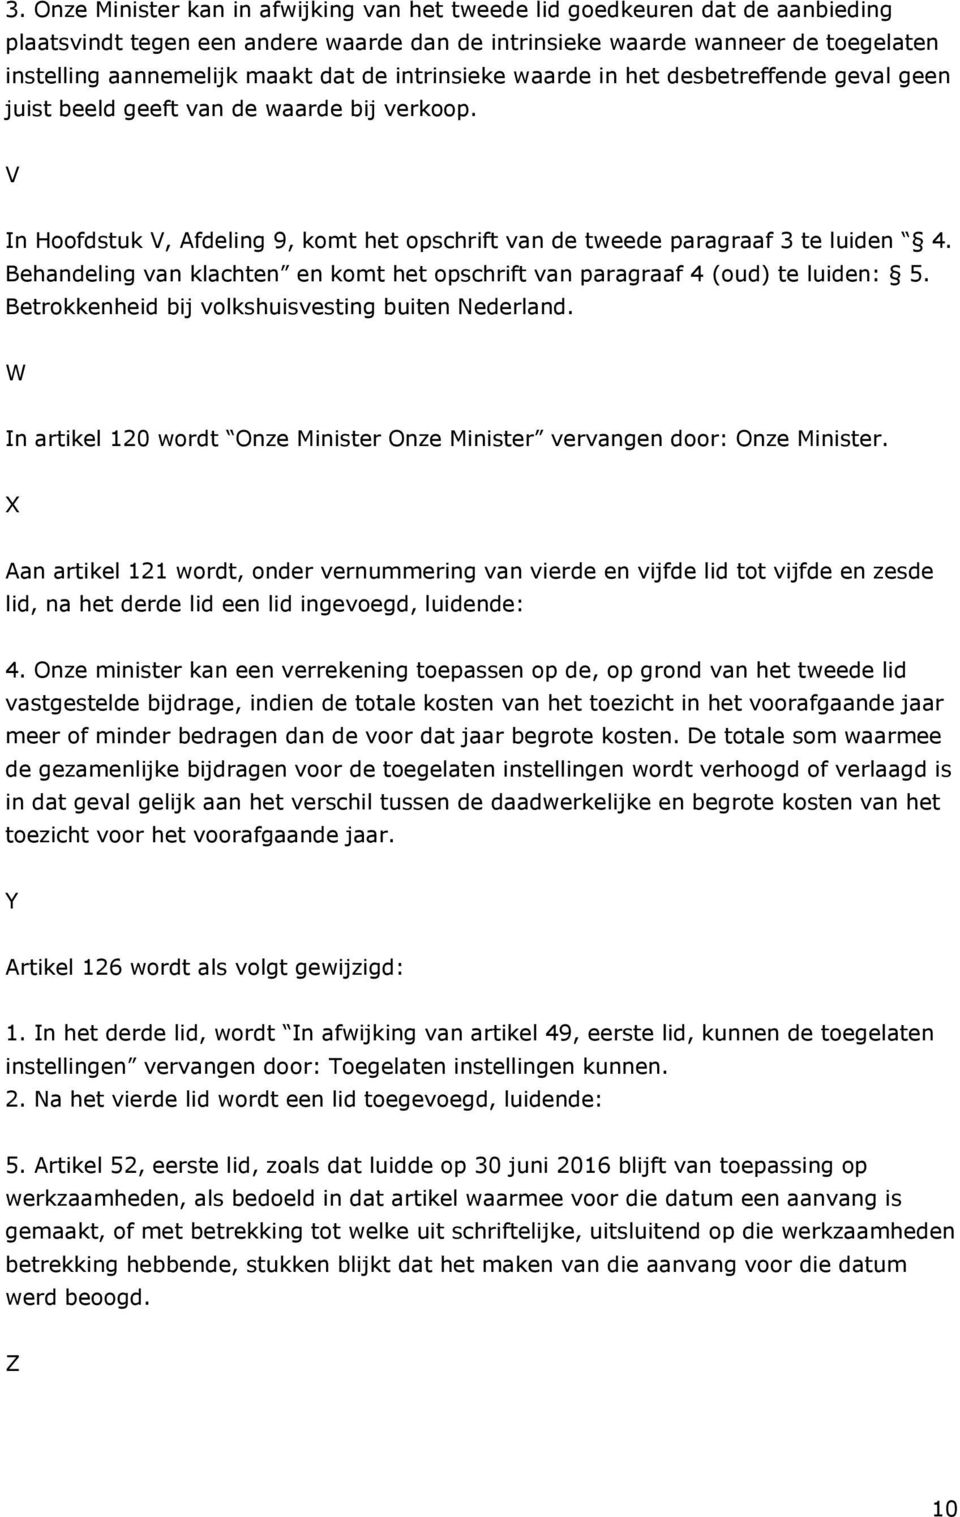 Behandeling van klachten en komt het opschrift van paragraaf 4 (oud) te luiden: 5. Betrokkenheid bij volkshuisvesting buiten Nederland.